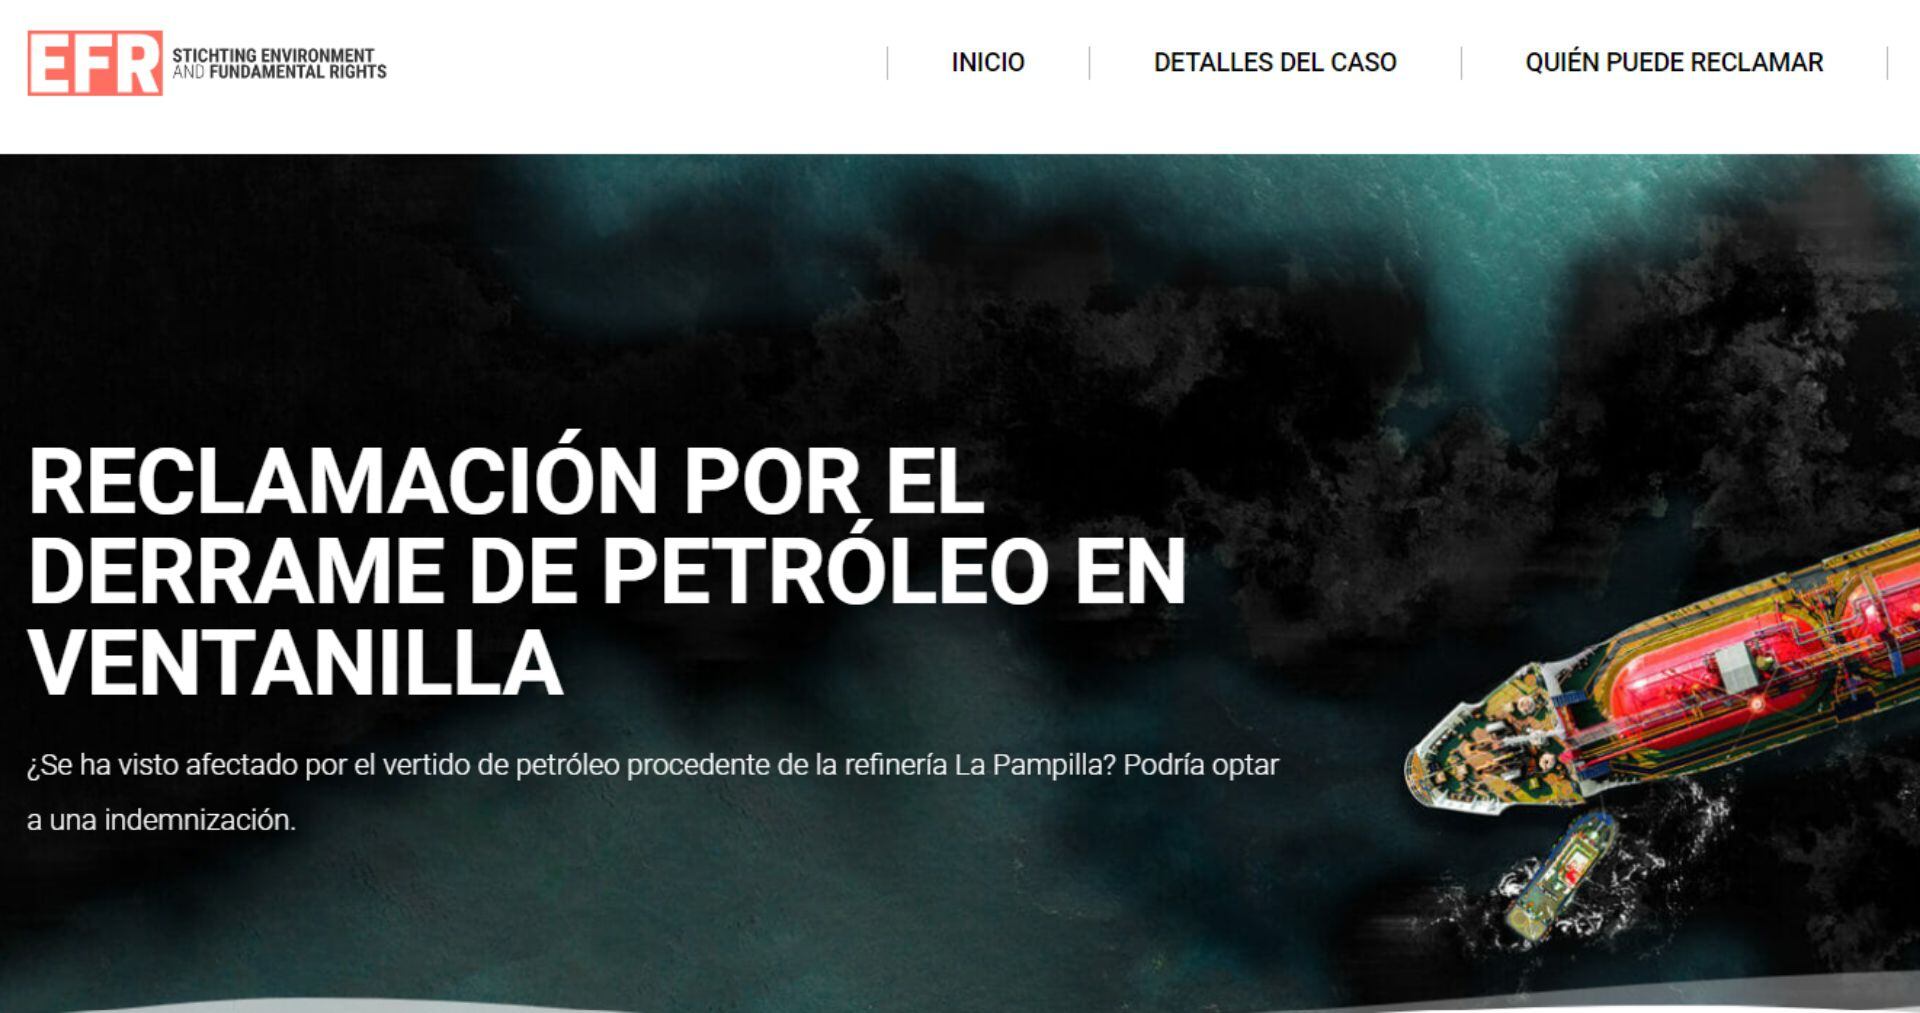 El 15 de enero de 2022 se derramaron unos 12.000 barriles de petróleo durante la descarga de un petrolero en la refinería La Pampilla, al norte de Lima, la capital de Perú.